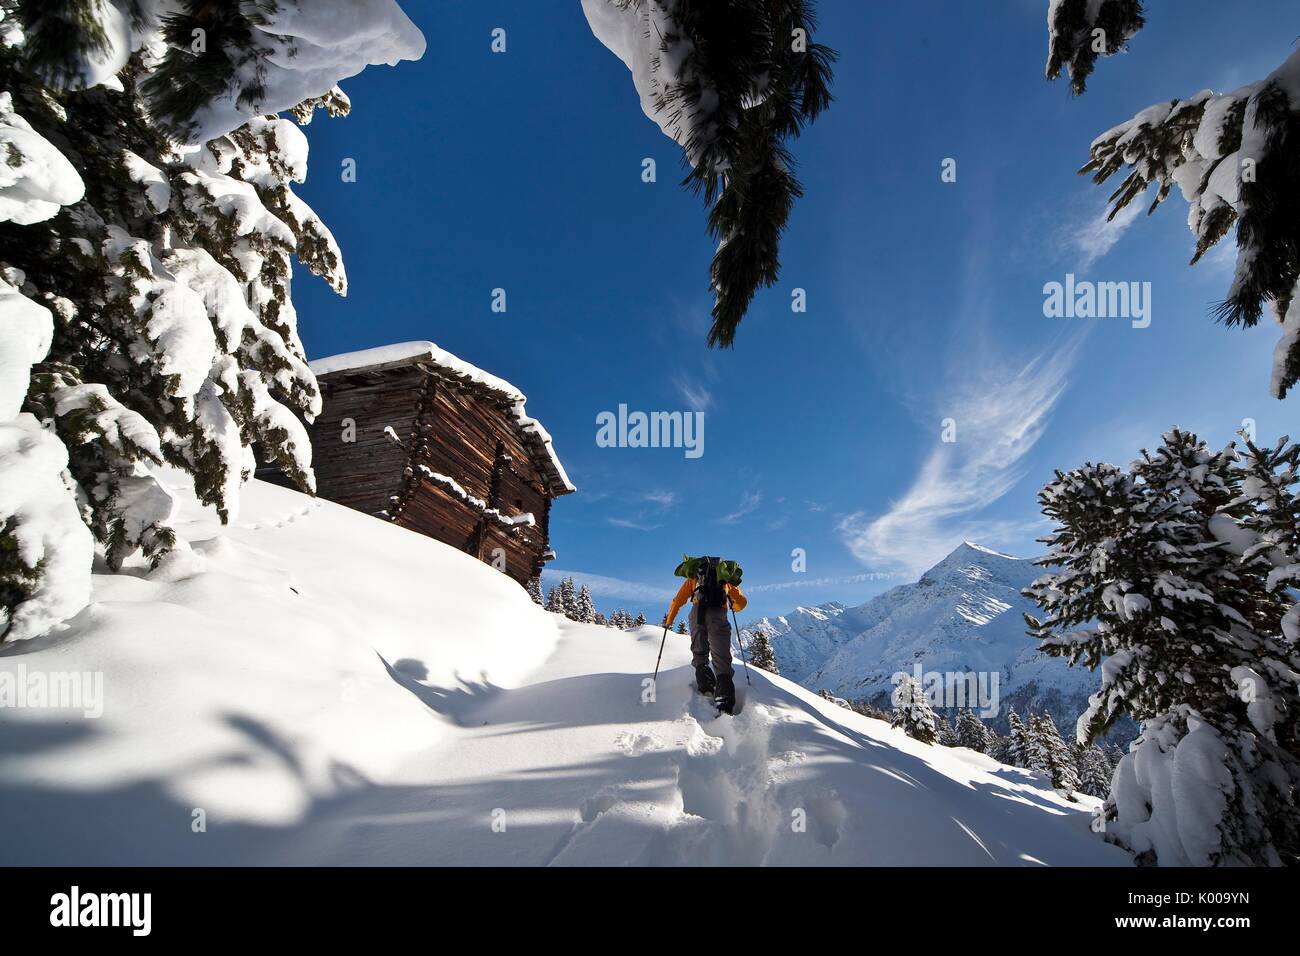 Randonneur en raquettes béni de l'avancement dans la neige fraîche en Baite recevables. Valfurva, Valtellina, Lombardie, Italie. Banque D'Images